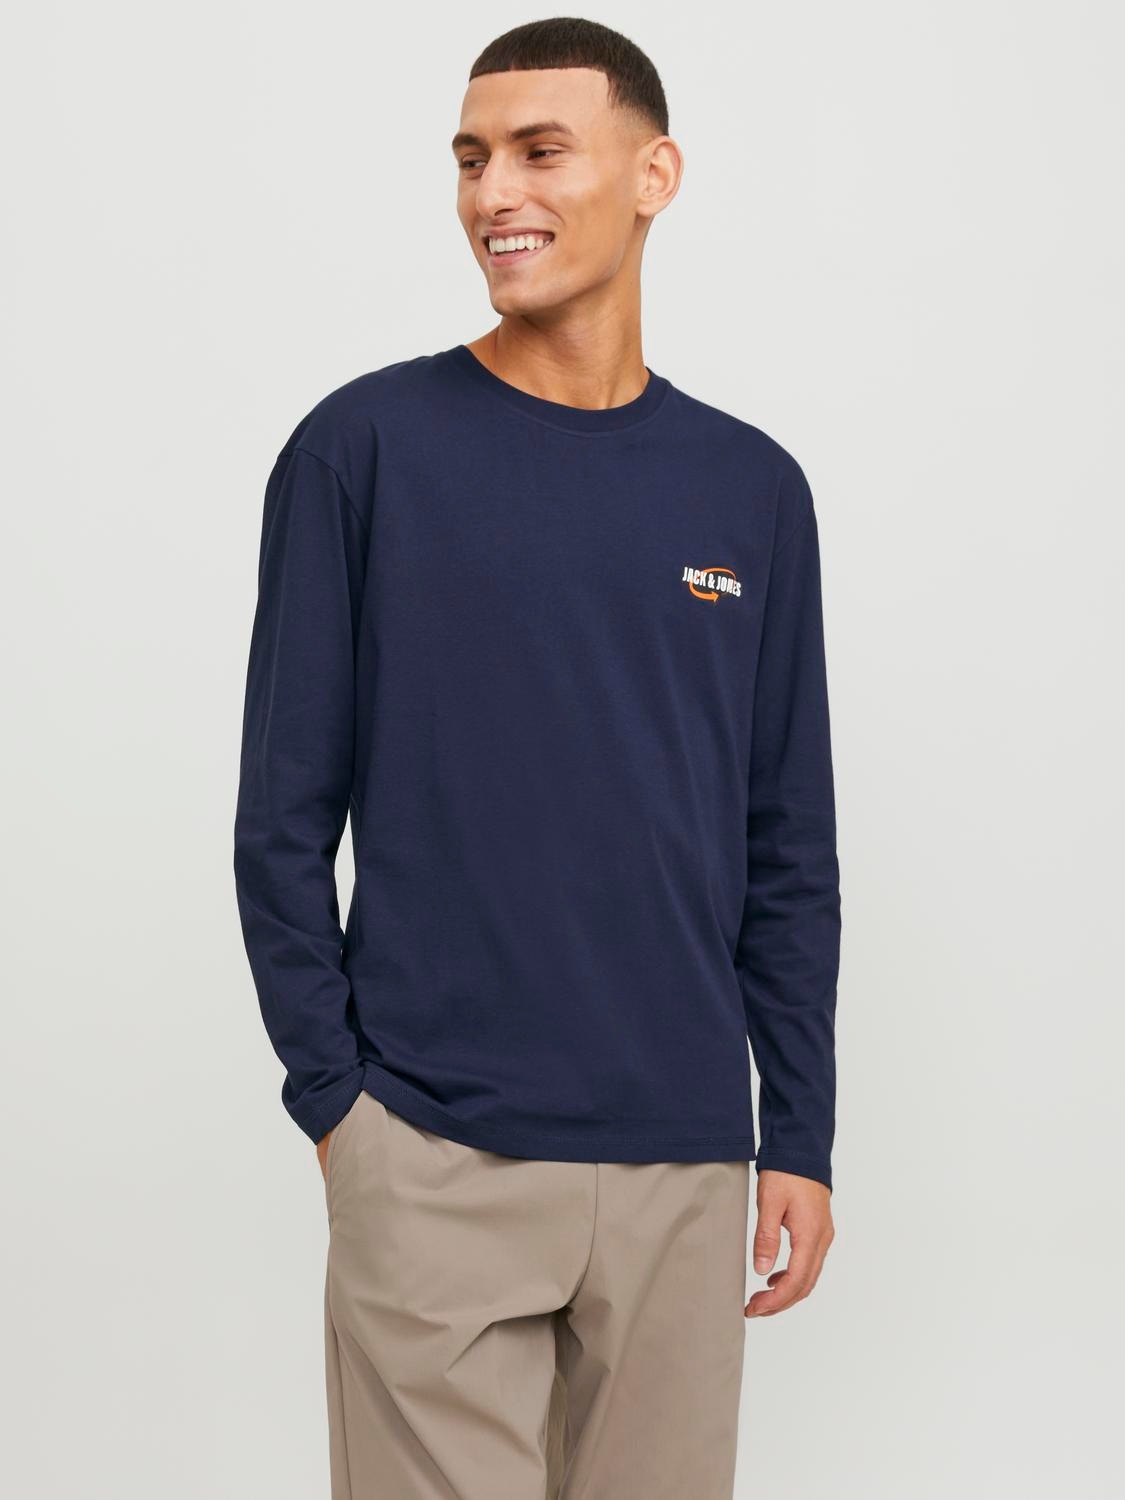 Jack & Jones Bedrukt Ronde hals T-shirt -Navy Blazer - 12253809